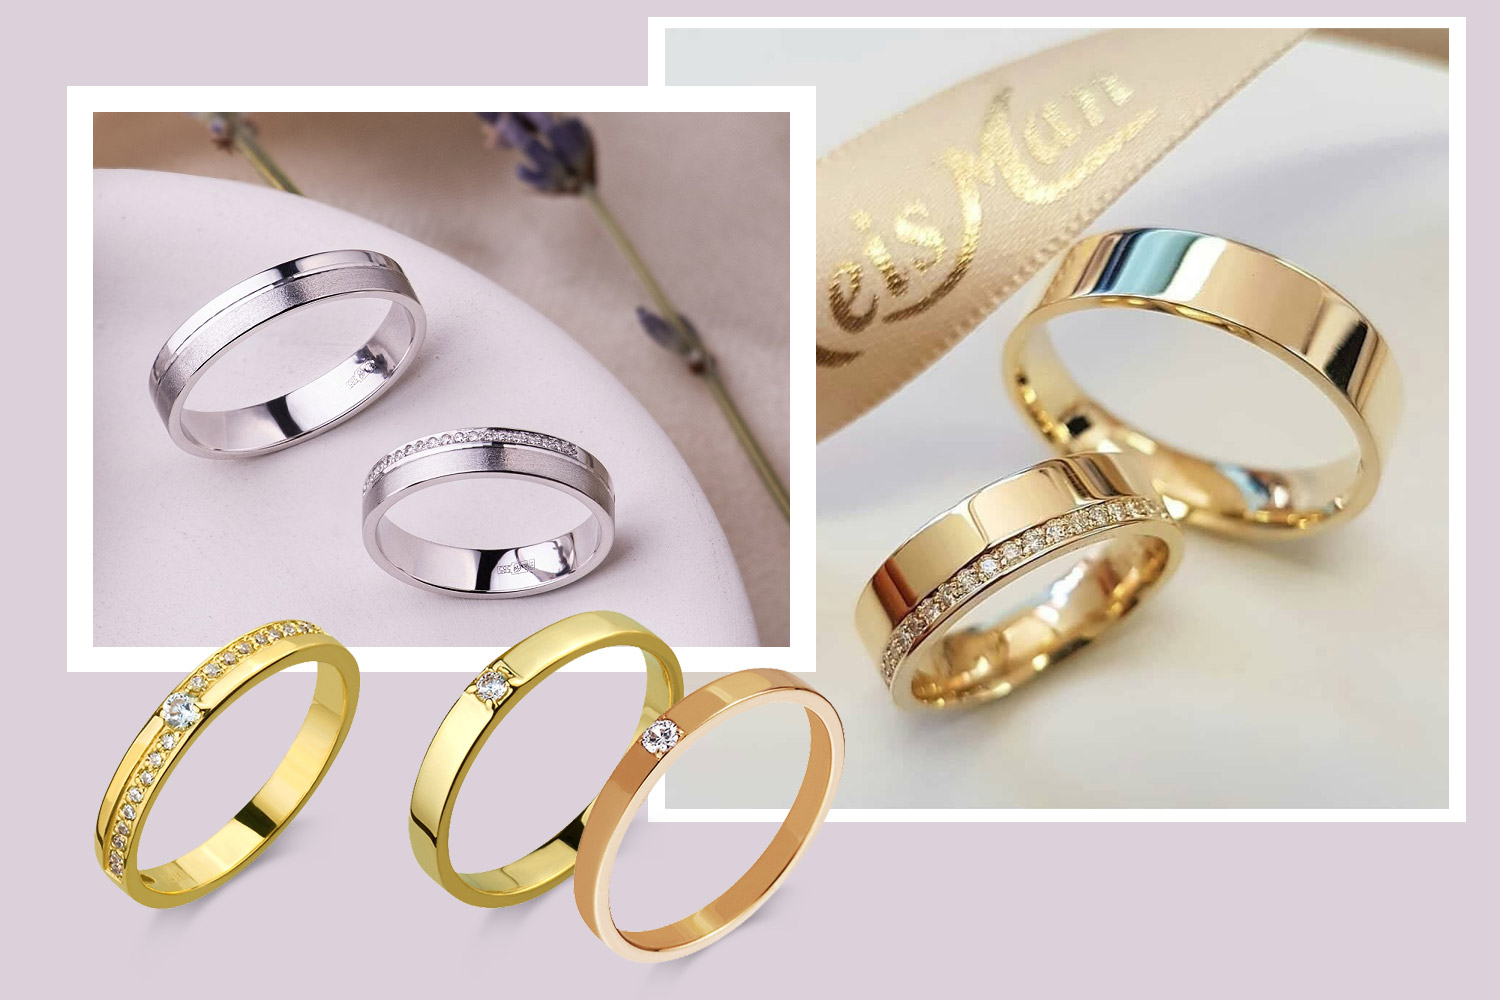 Как выбрать обручальные кольца, если у мужа и жены разные вкусы?